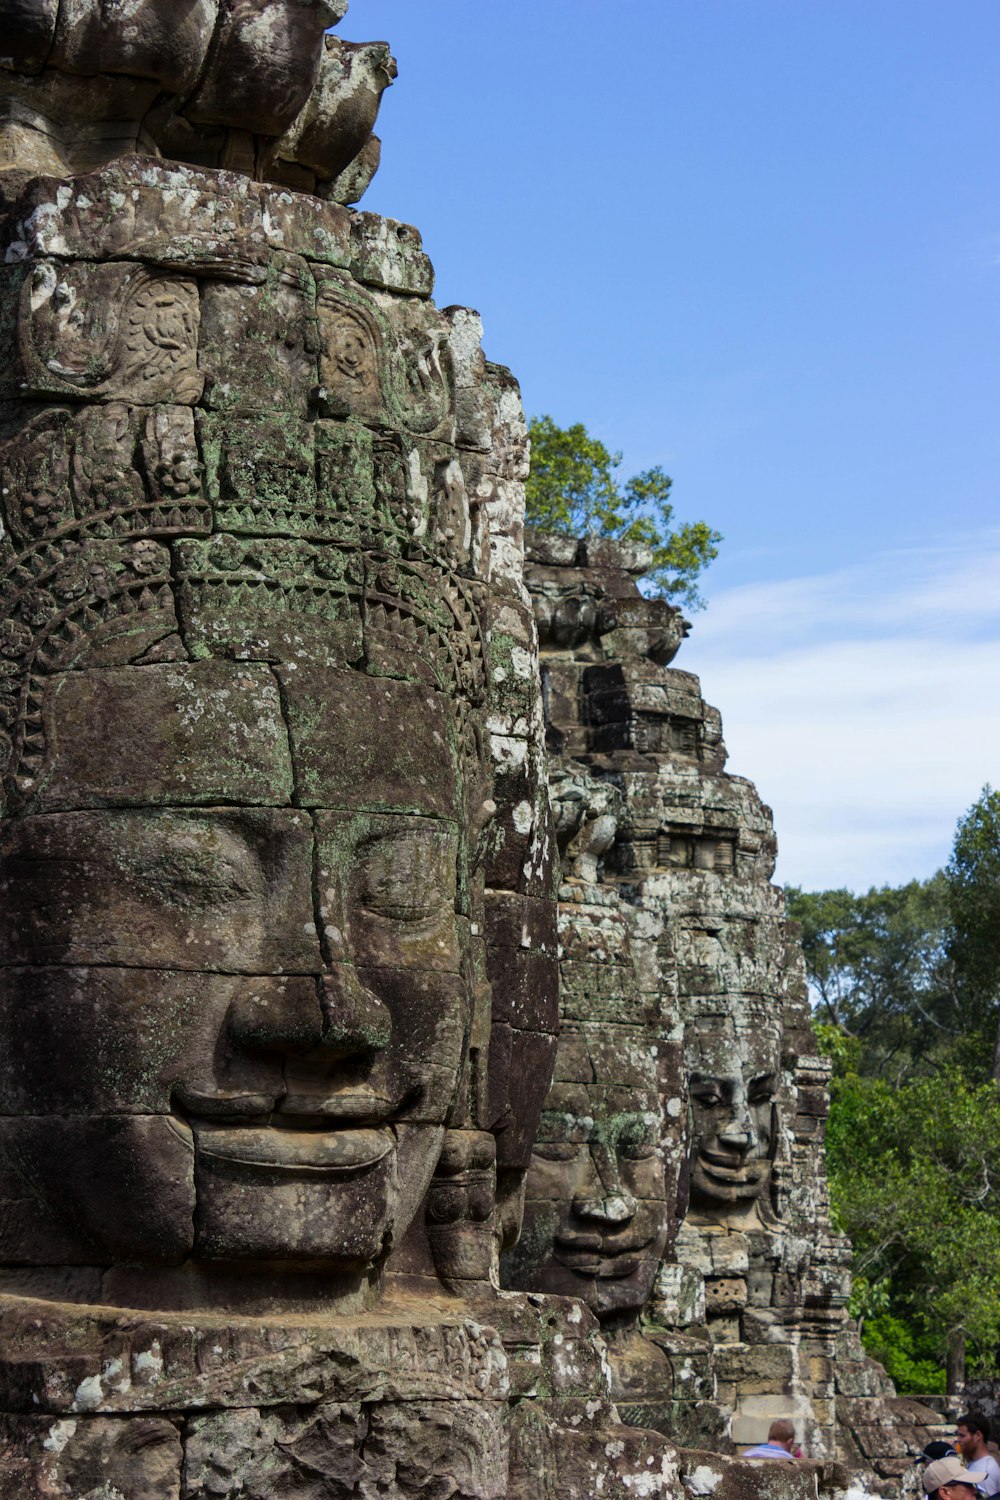 Buddha face on stone